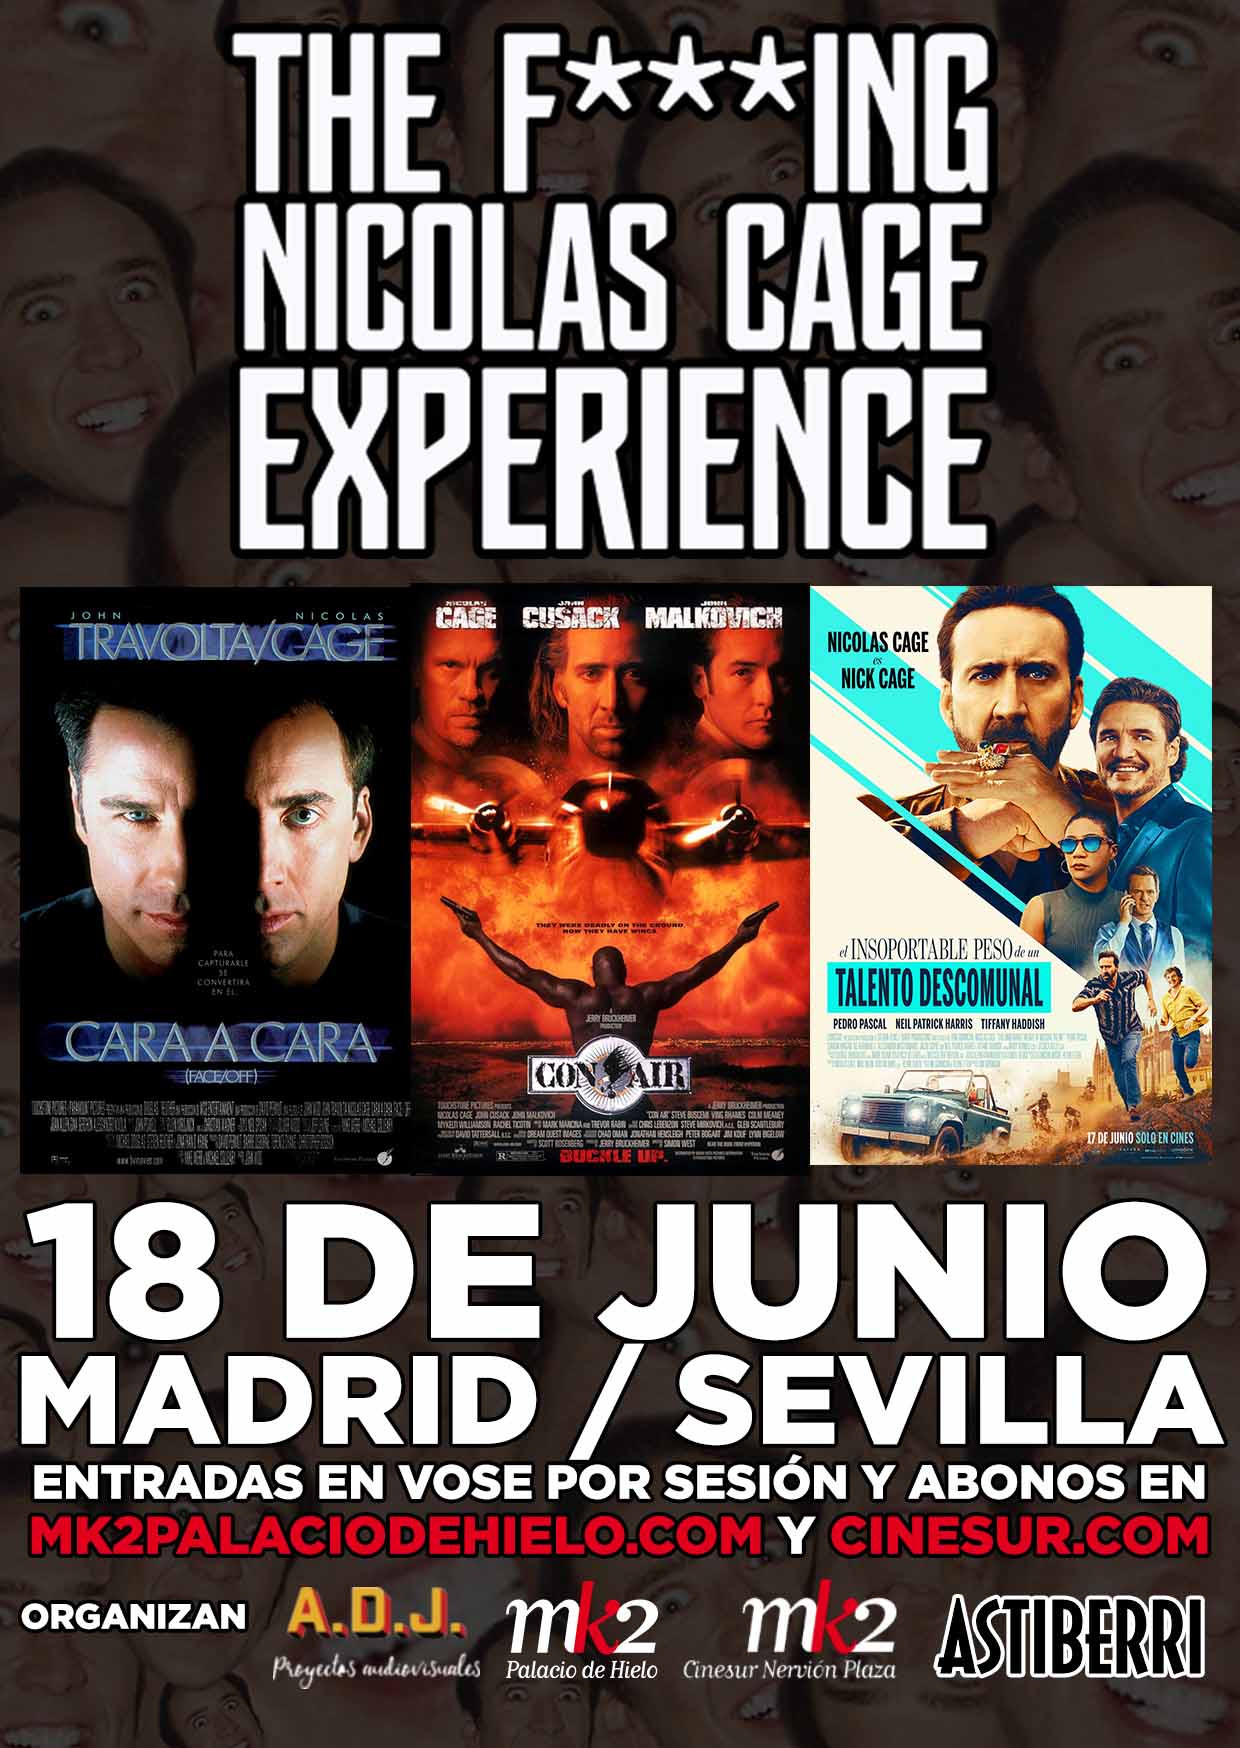 Madrid y Sevilla vivirán la The Nicolas Cage Experience